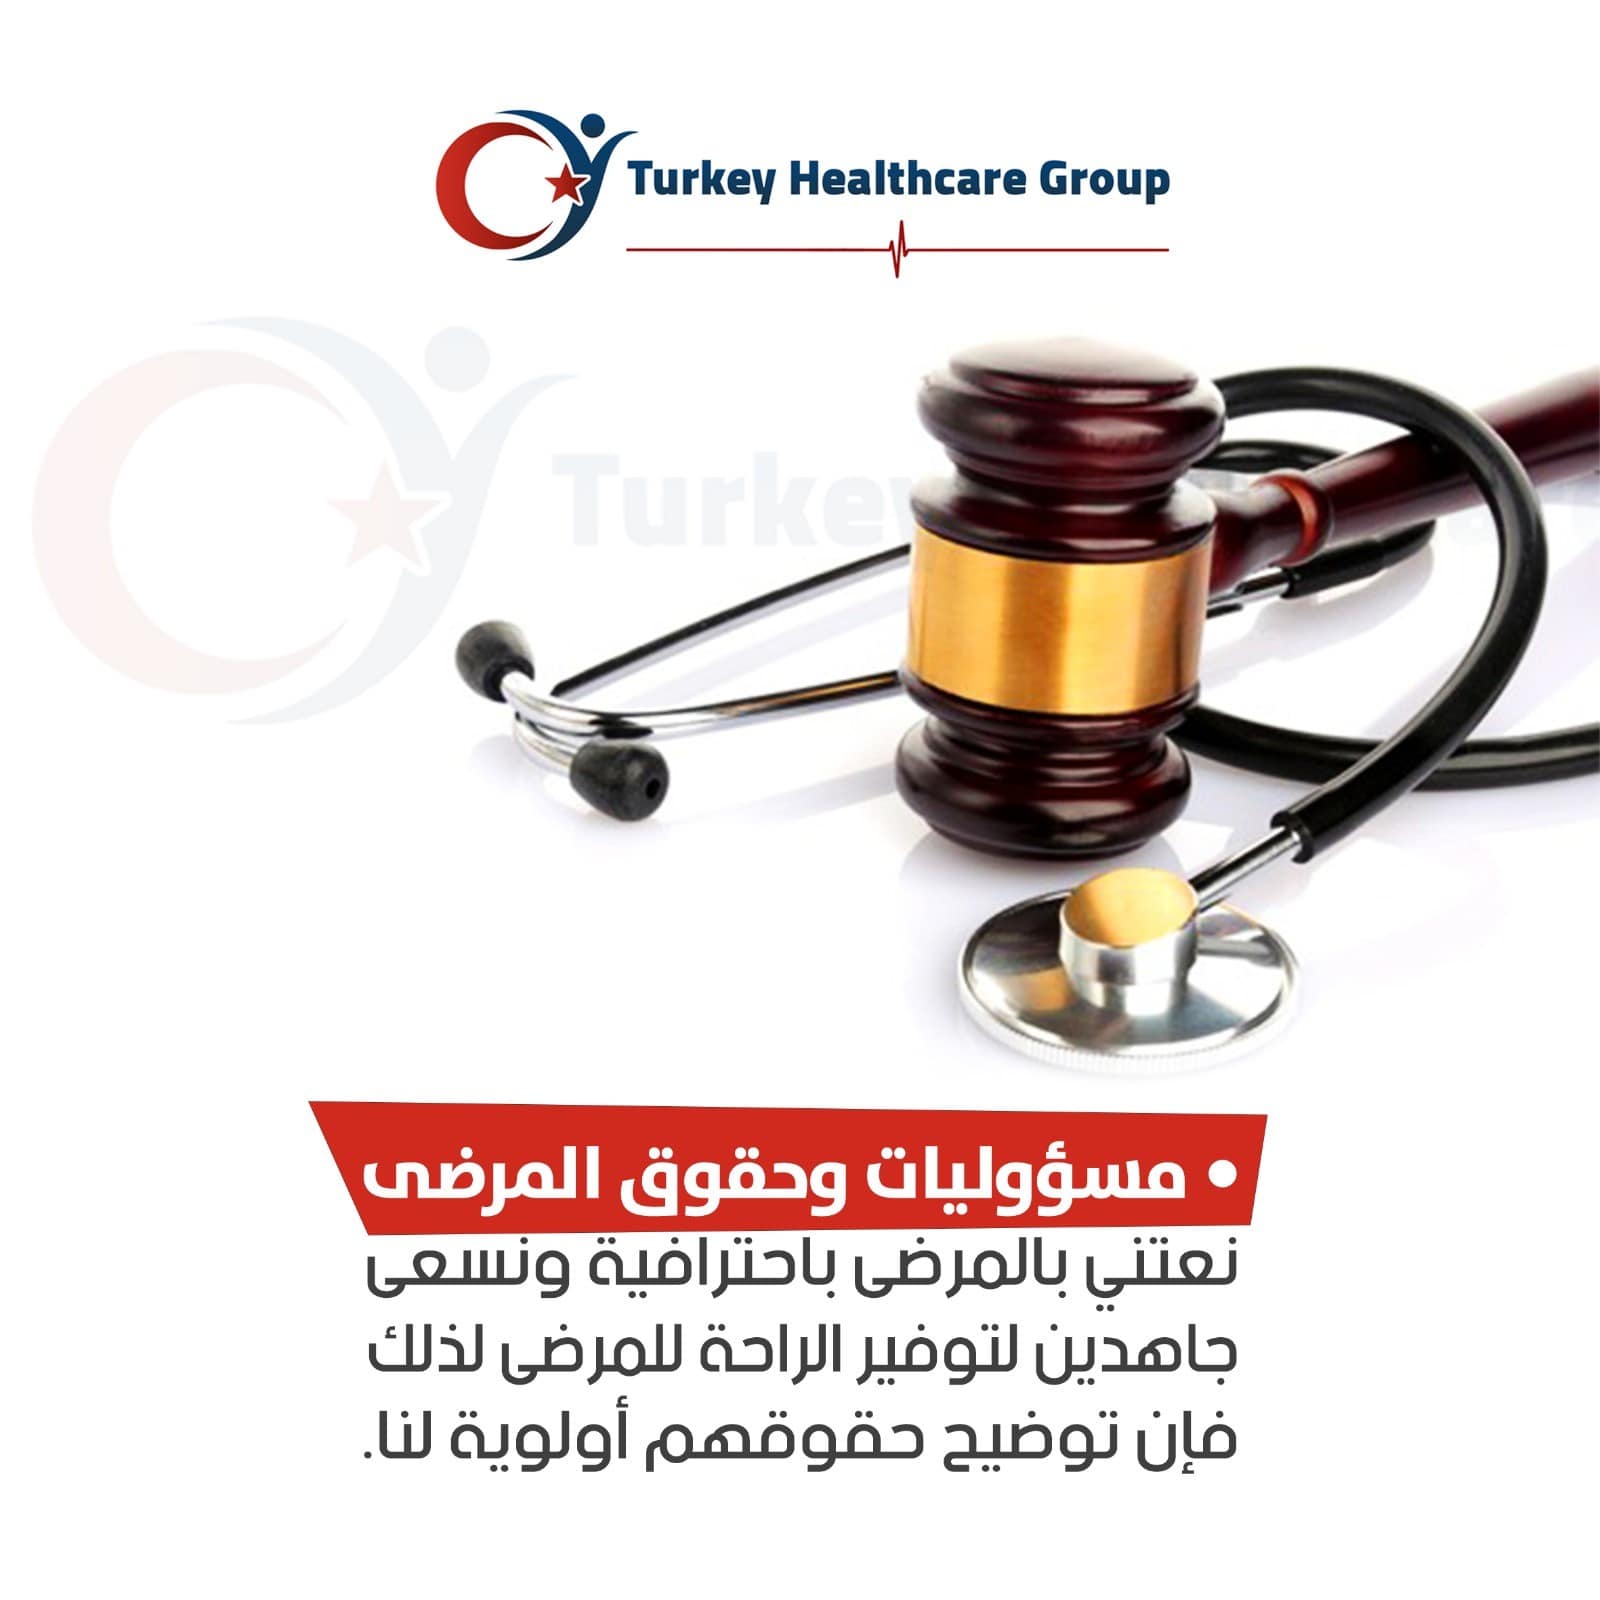 الرعاية وحقوق المرضى مجموعة تركيا للرعاية الصحية Turkey Healthcare Group